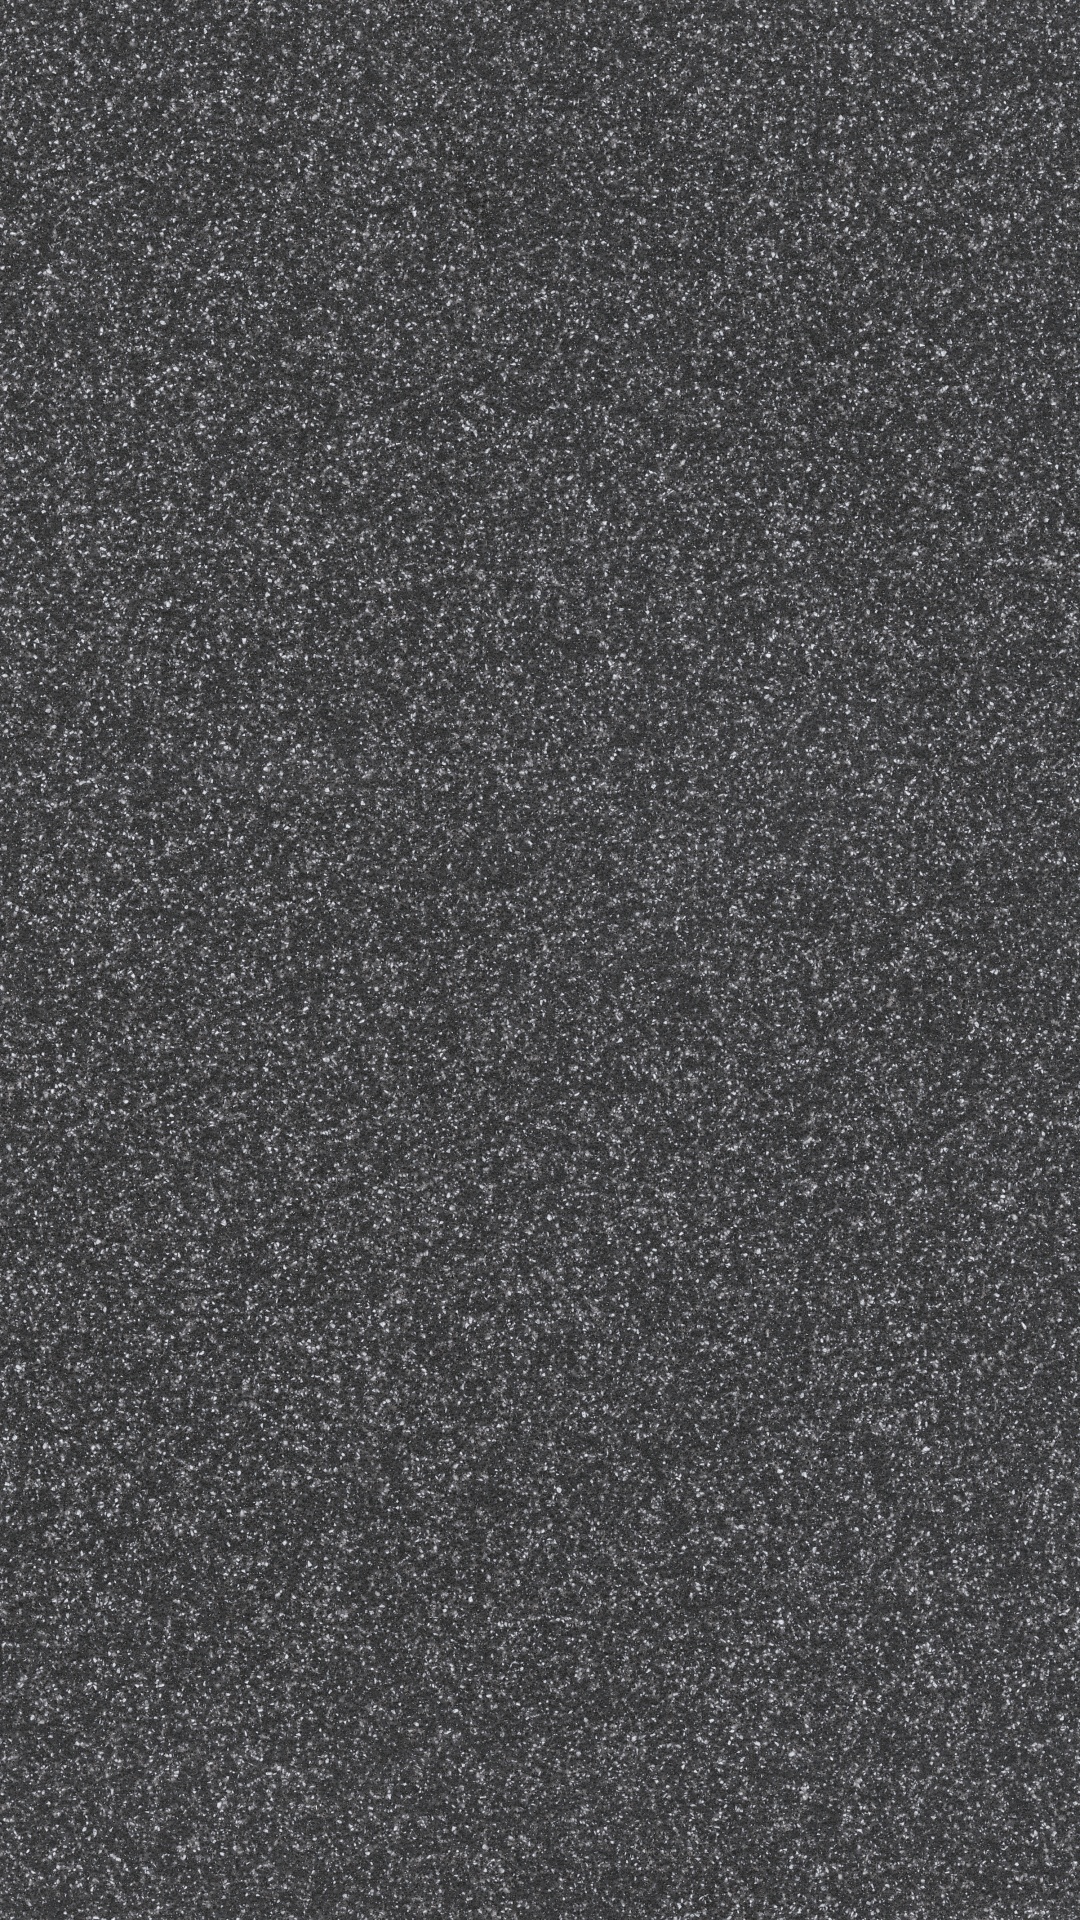 Textil de Lunares en Blanco y Negro. Wallpaper in 1080x1920 Resolution